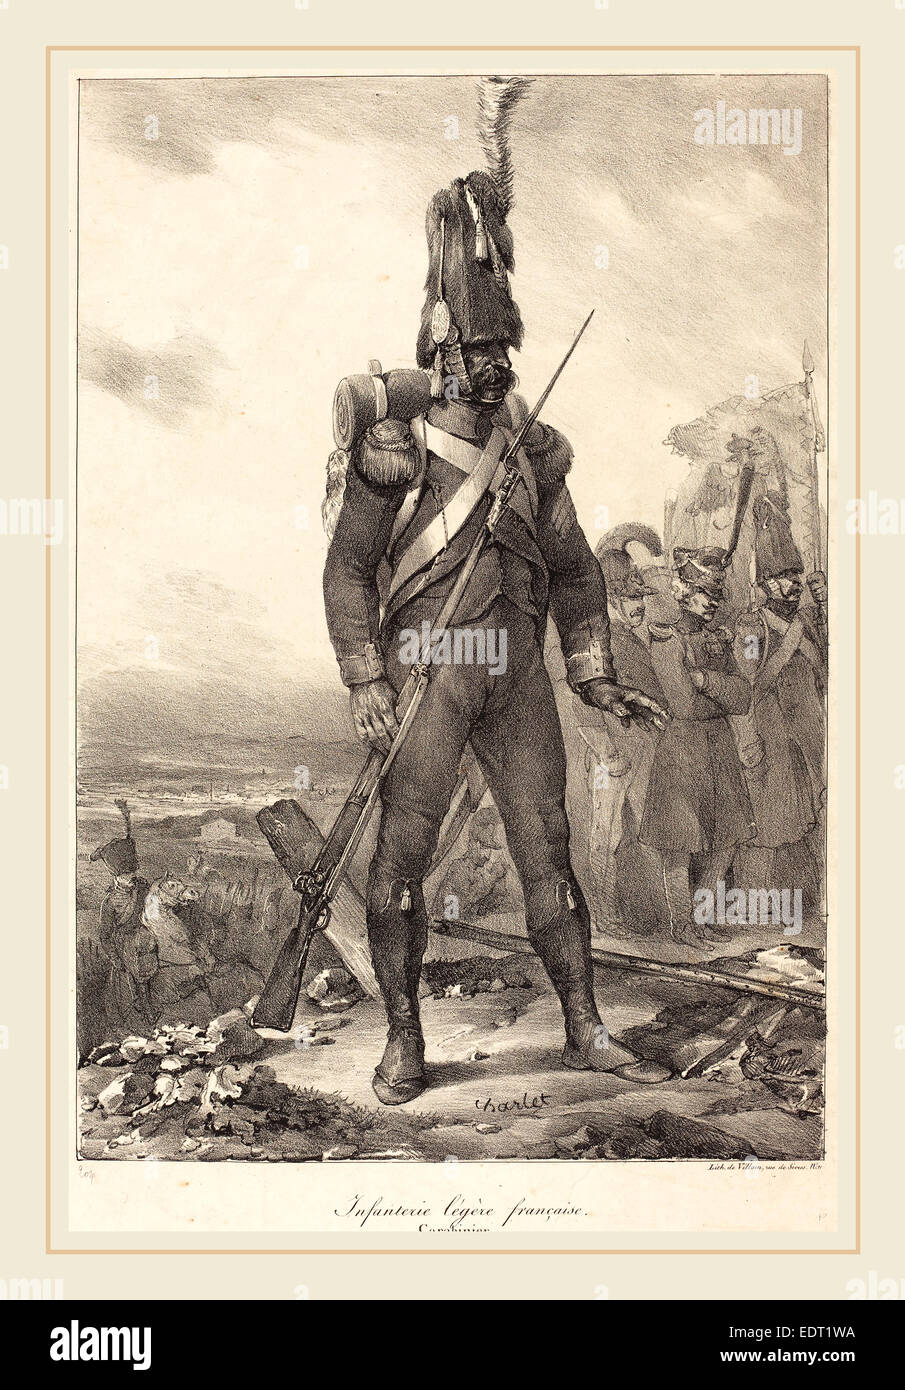 Nicolas-Toussaint Charlet (French, 1792-1845), Infanterie legère française, Carabinier, 1822, lithograph Stock Photo